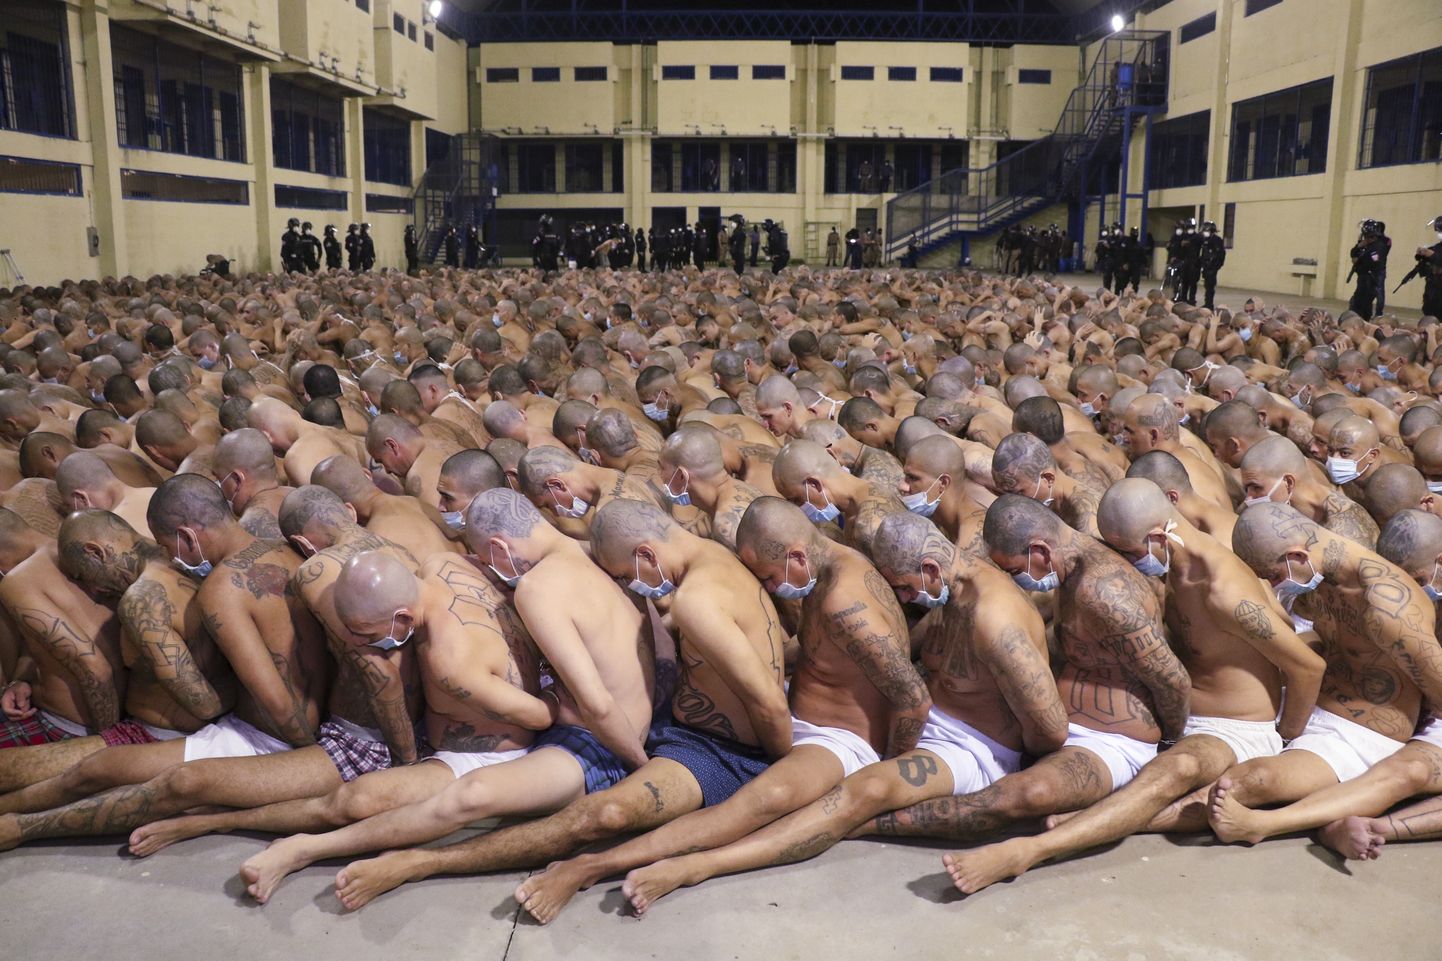 El Salvadori ühe vangla kinnipeetavad pidid 24 tundi koos istuma. Osaliselt maske kandnud kurjategijatel ei olnud aga võimalust üksteisest eemal istuda.